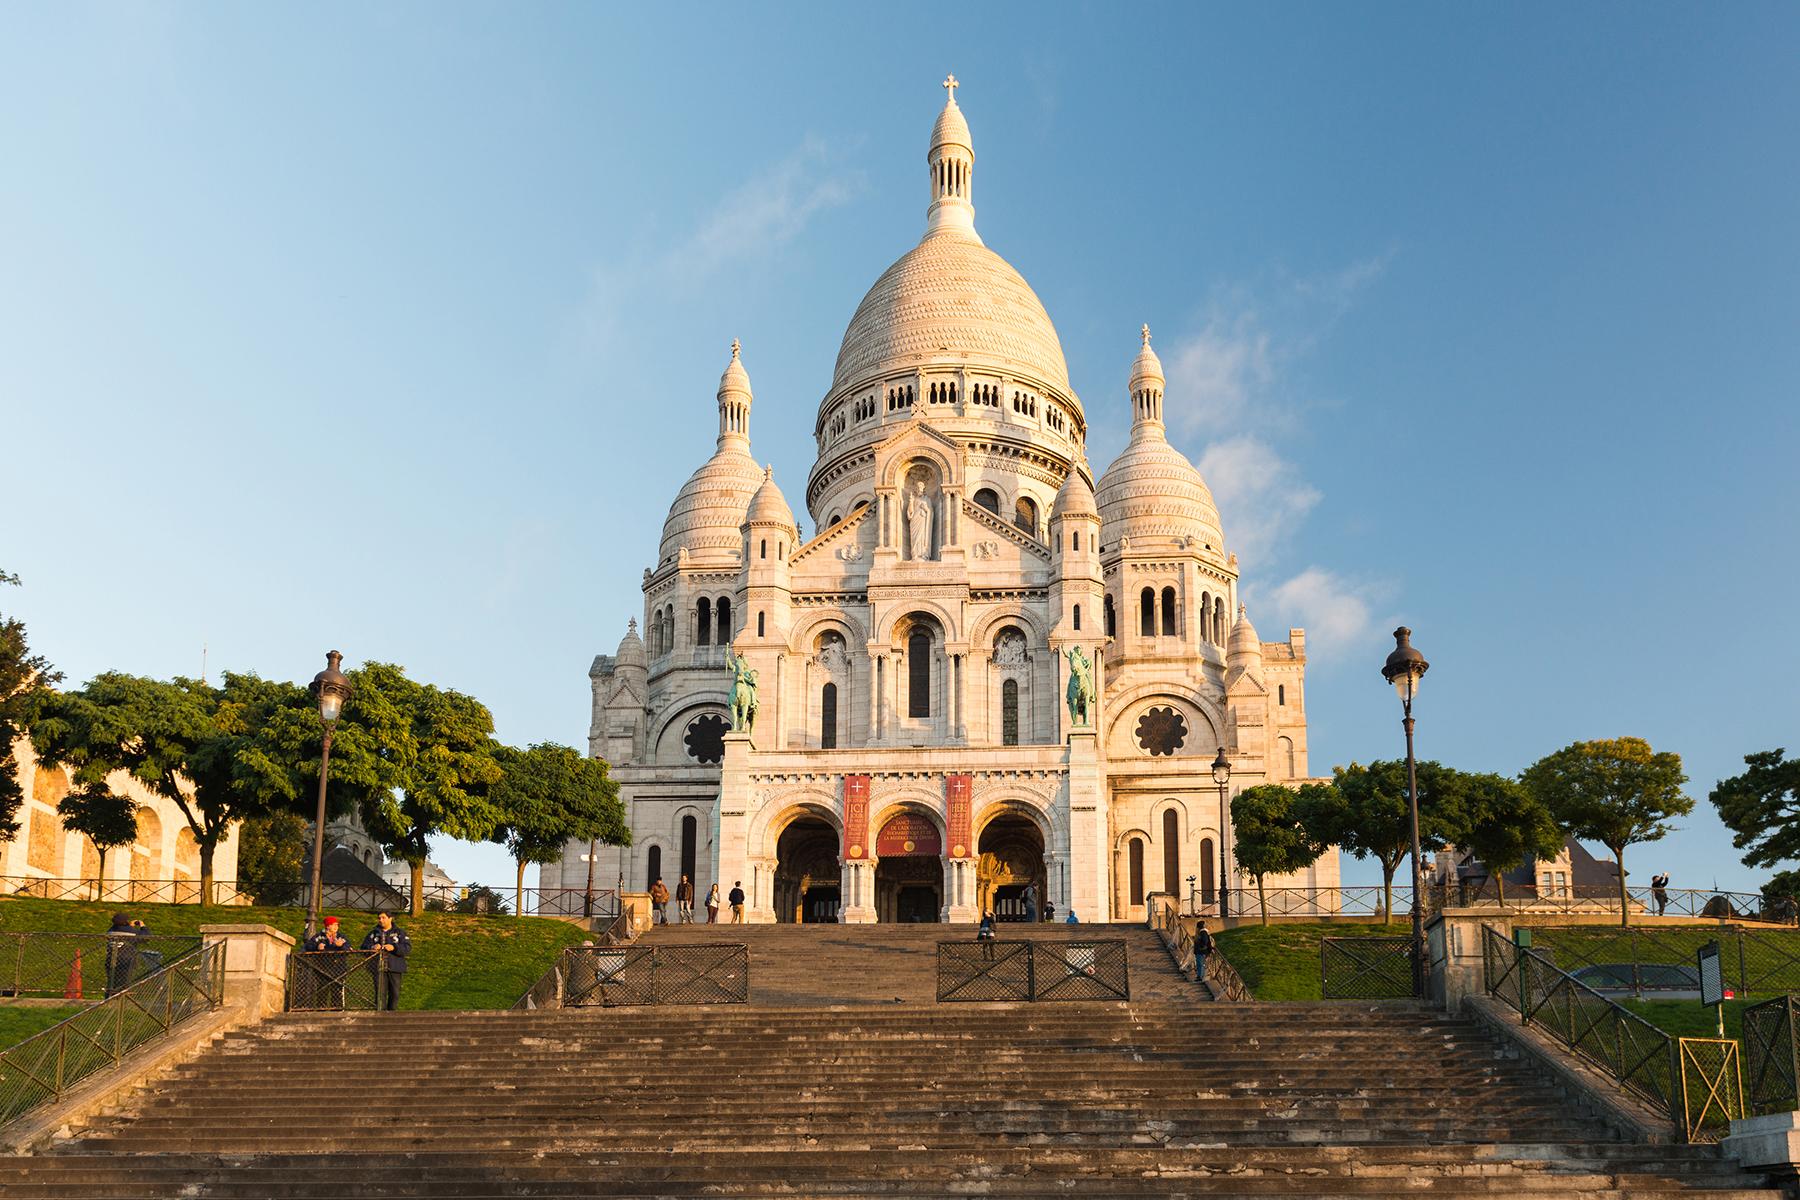 tourist information for paris france